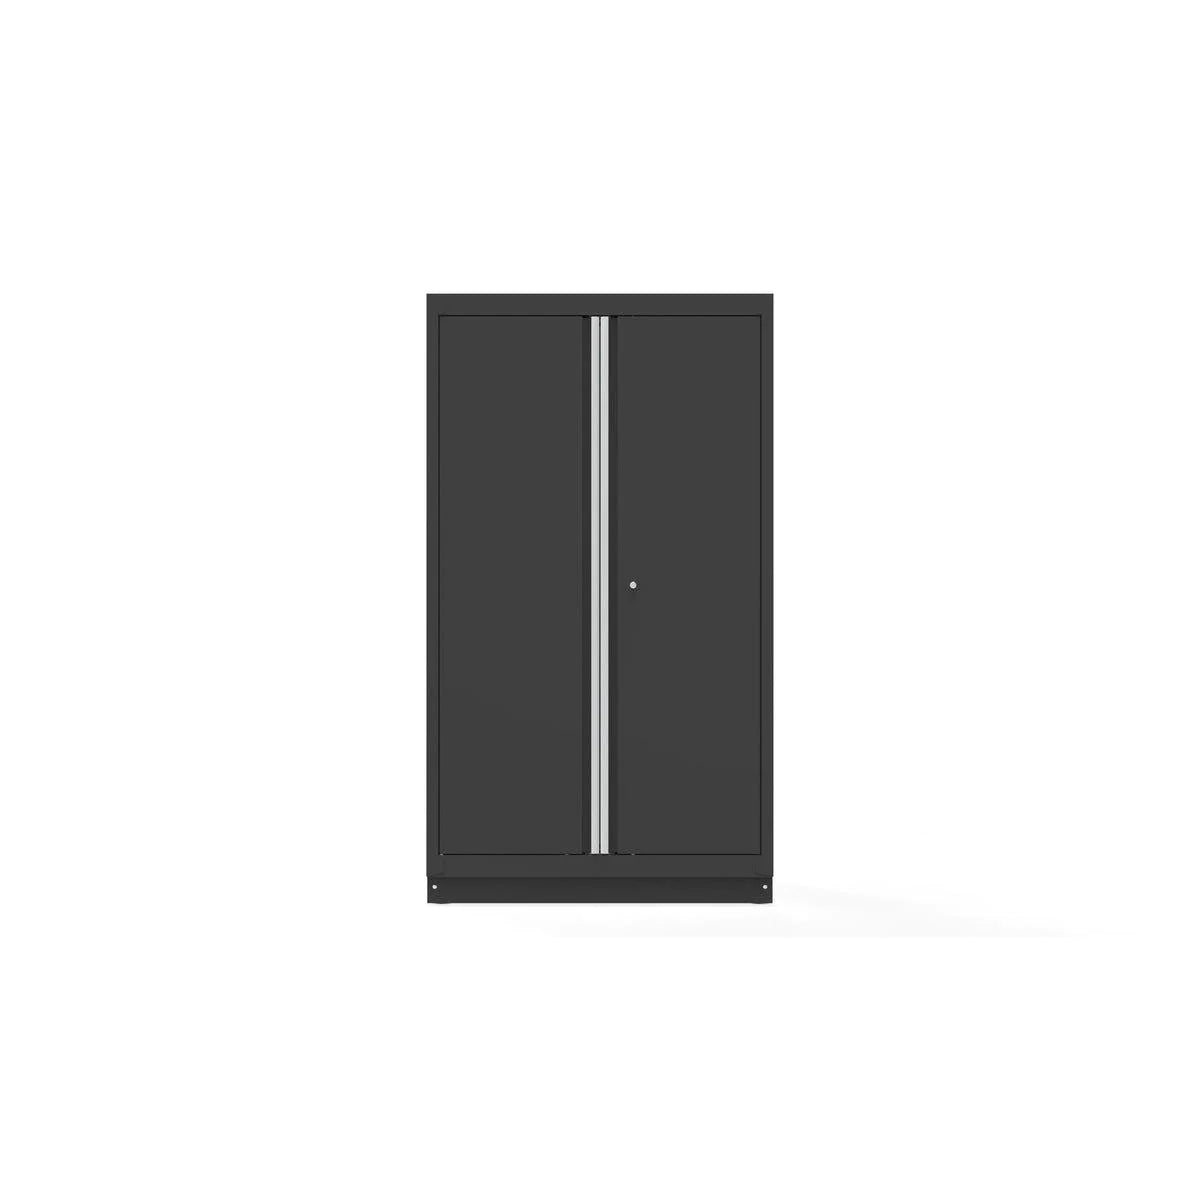 44" Double-Door Cabinet with Aluminum Handle, Dark Grey